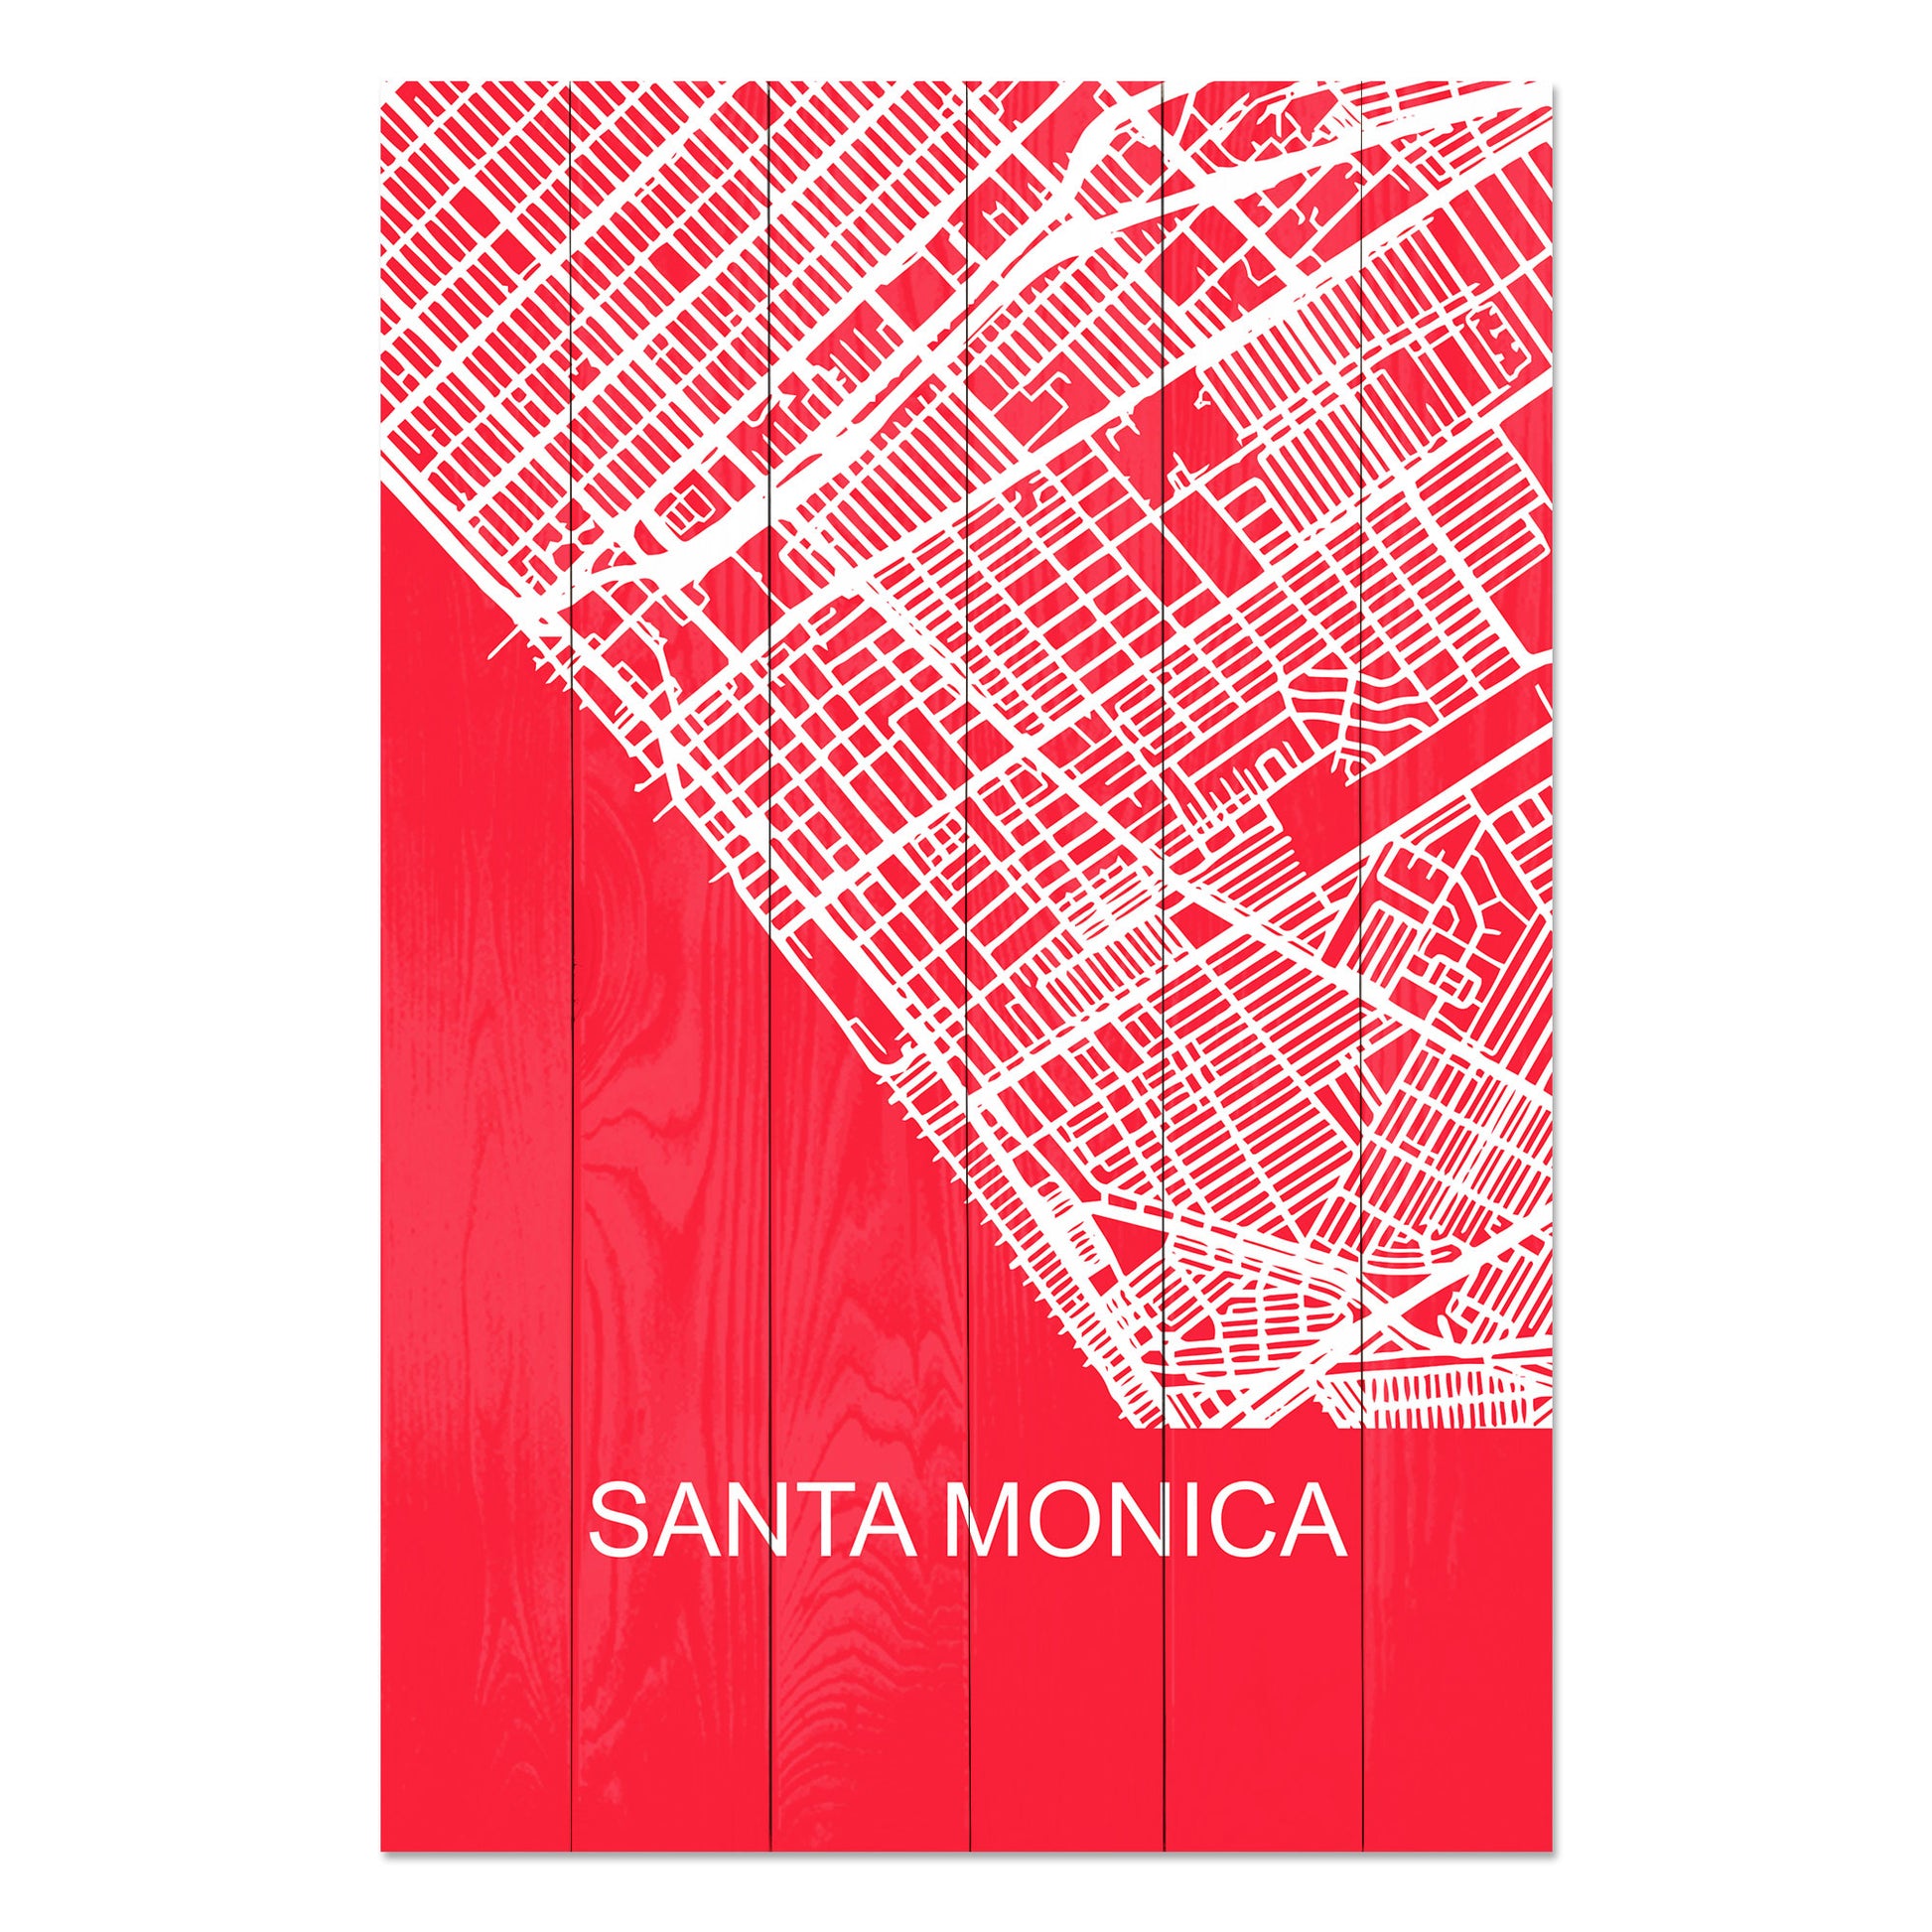 Obraz na drewnie Mapa Santa Monica - Santa Monica